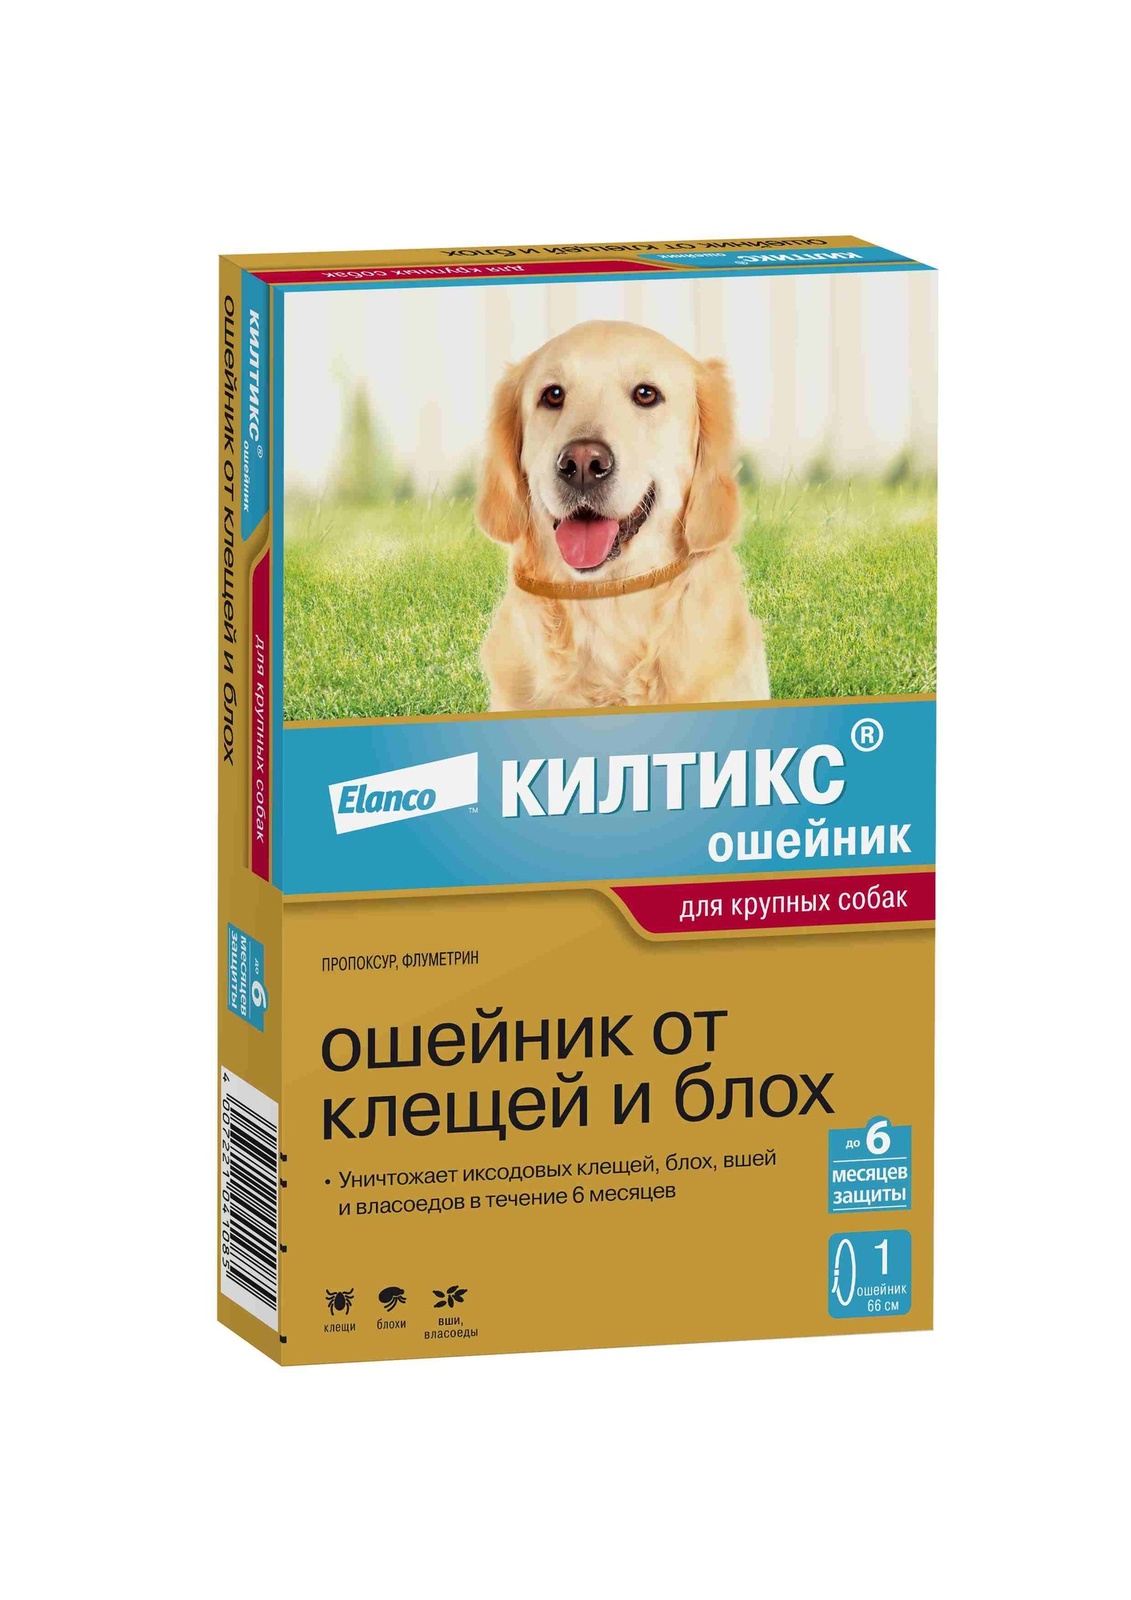 Elanco Elanco ошейник Килтикс® от клещей и блох для собак крупных пород (10 г)